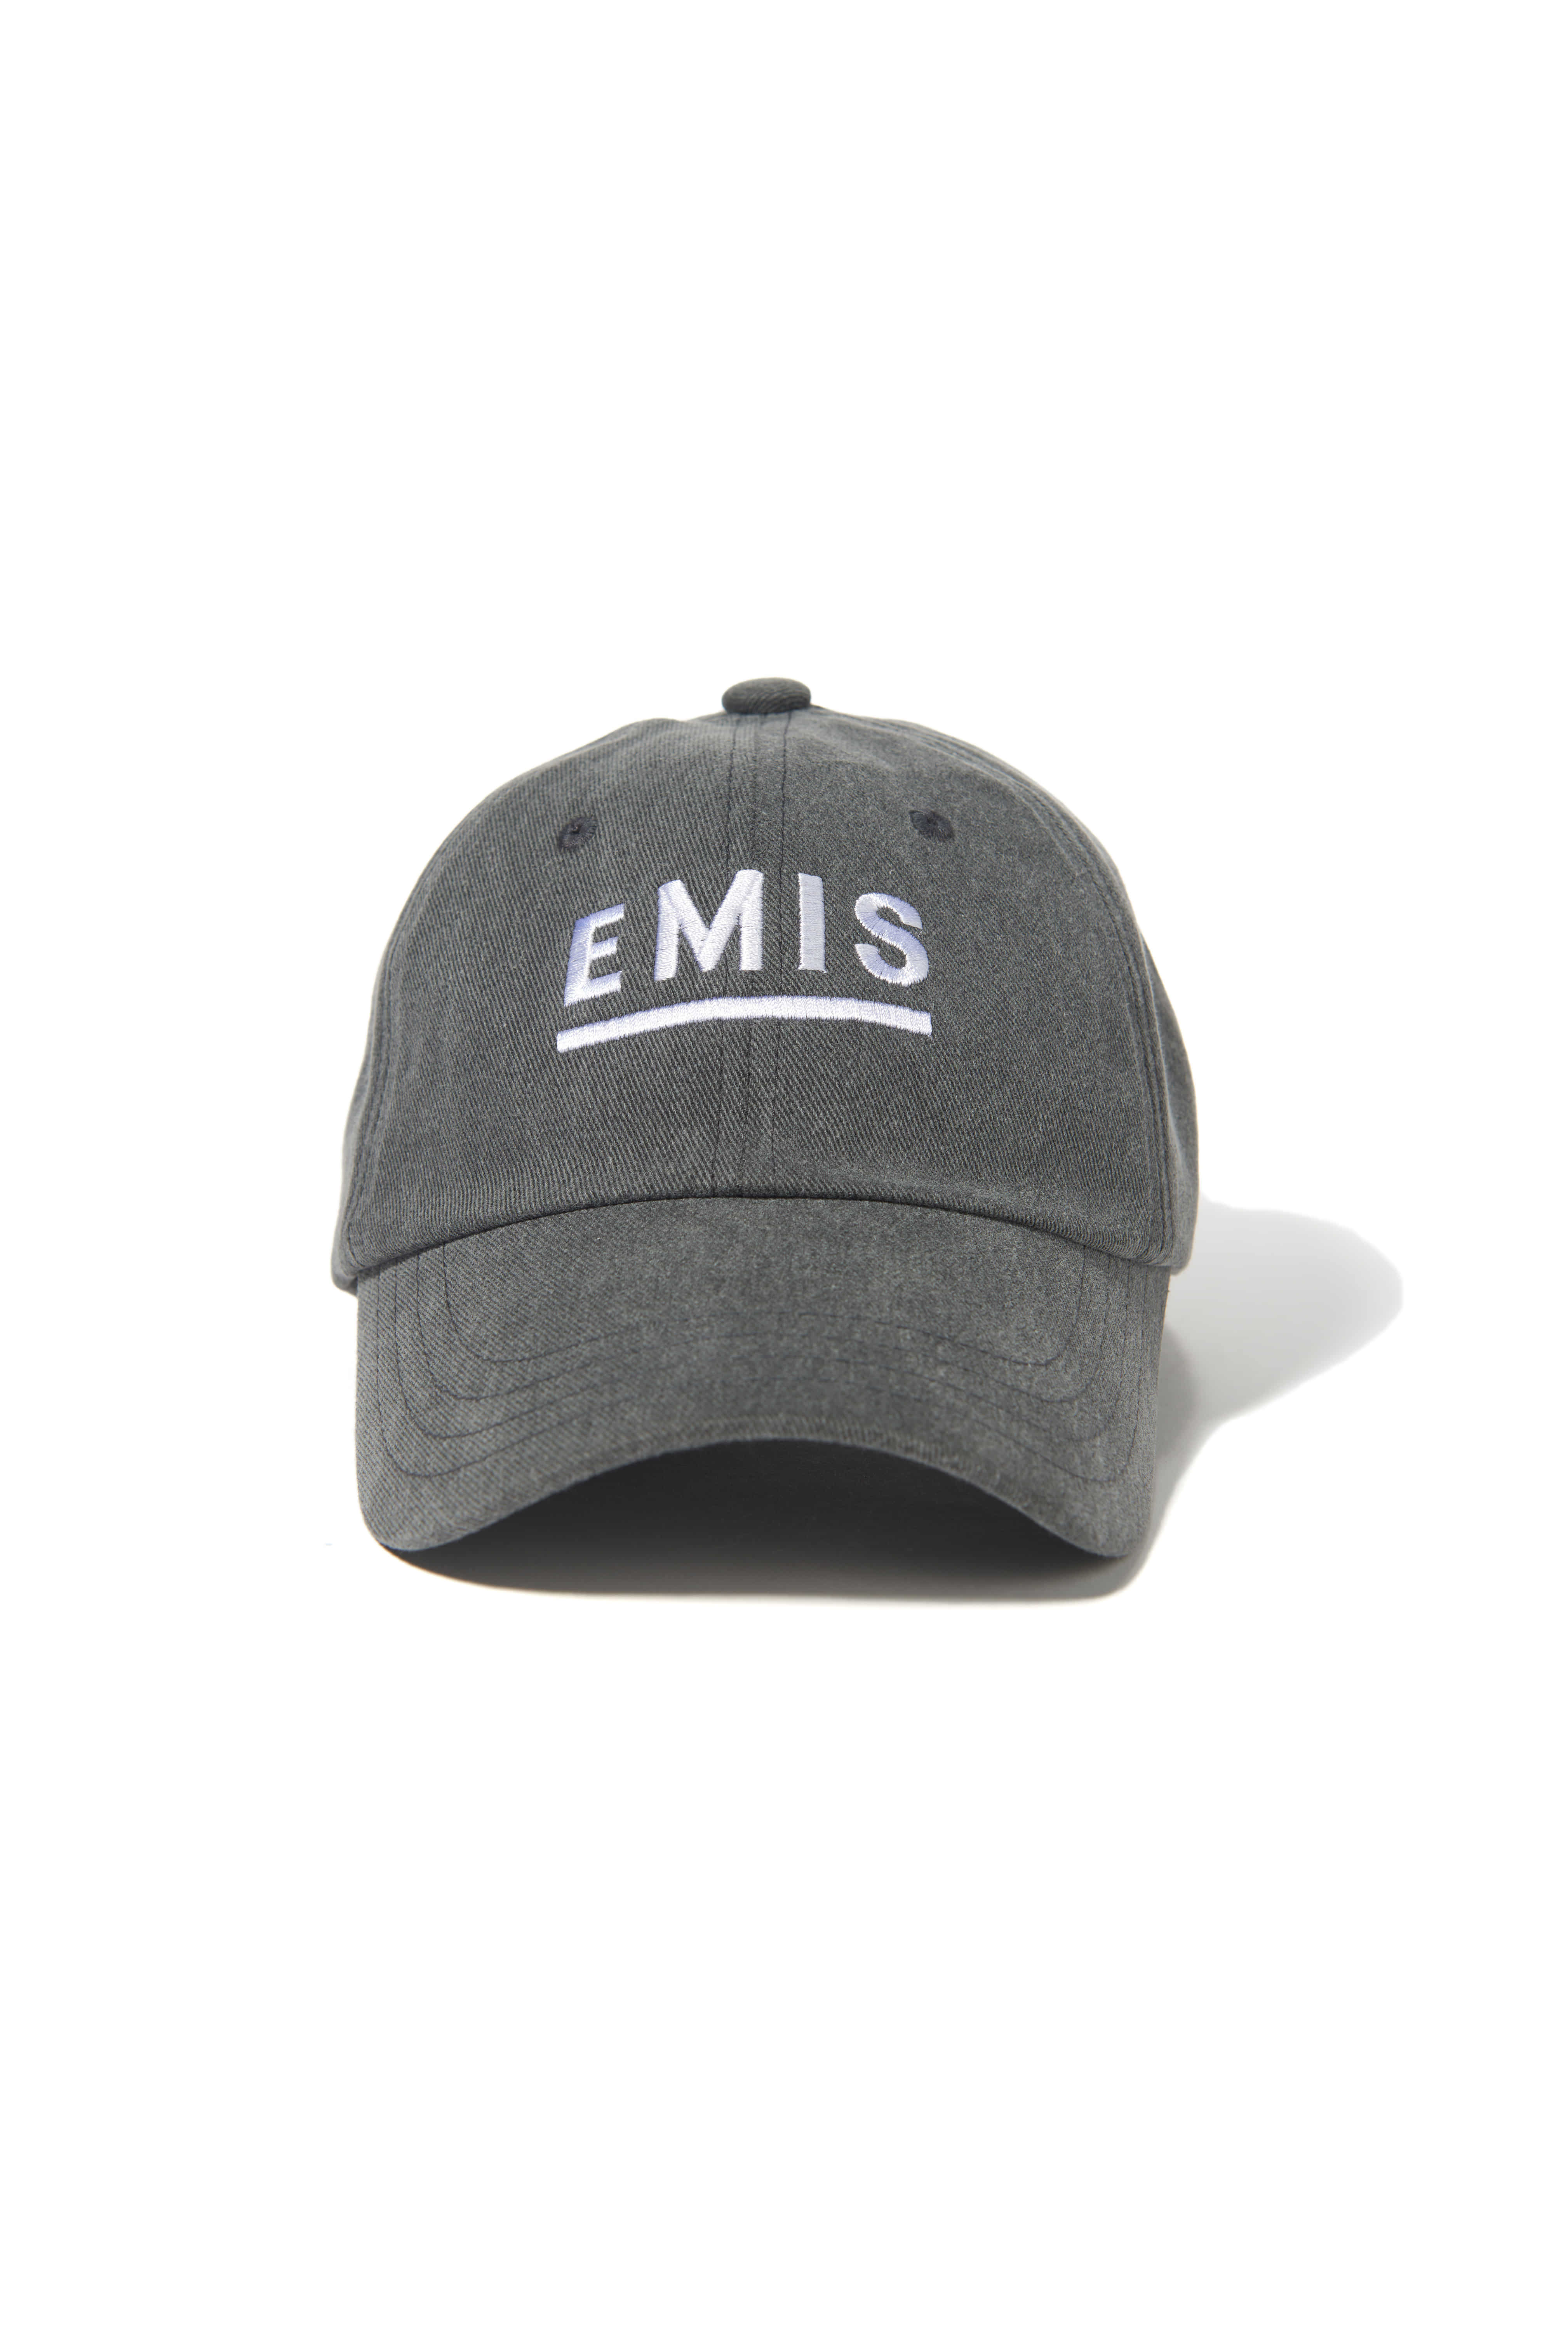 DIM GRAY EP14 PIGMENT EMIS CAP